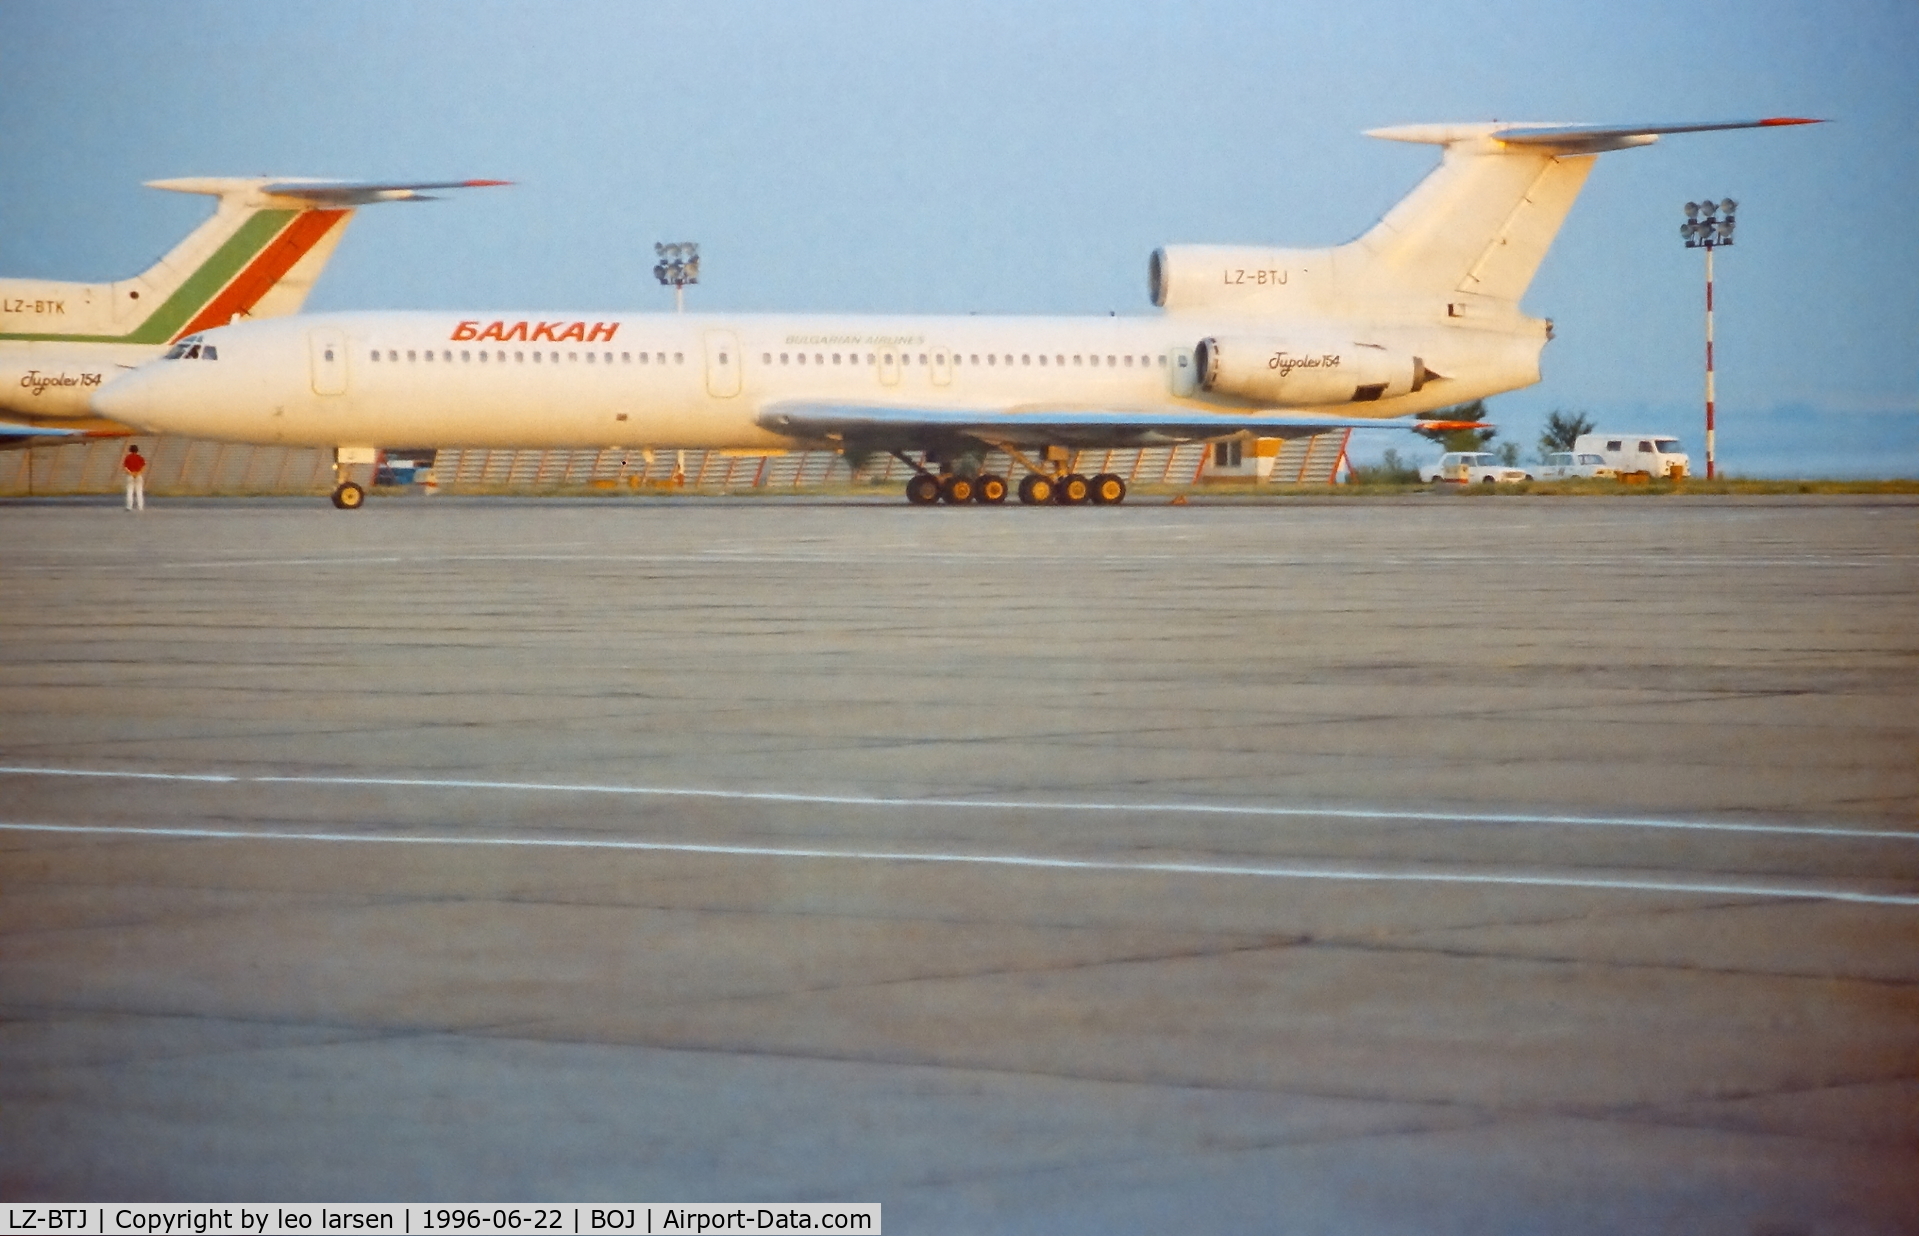 LZ-BTJ, 1978 Tupolev Tu-154B C/N 78A270, Burgas 22.6.1996